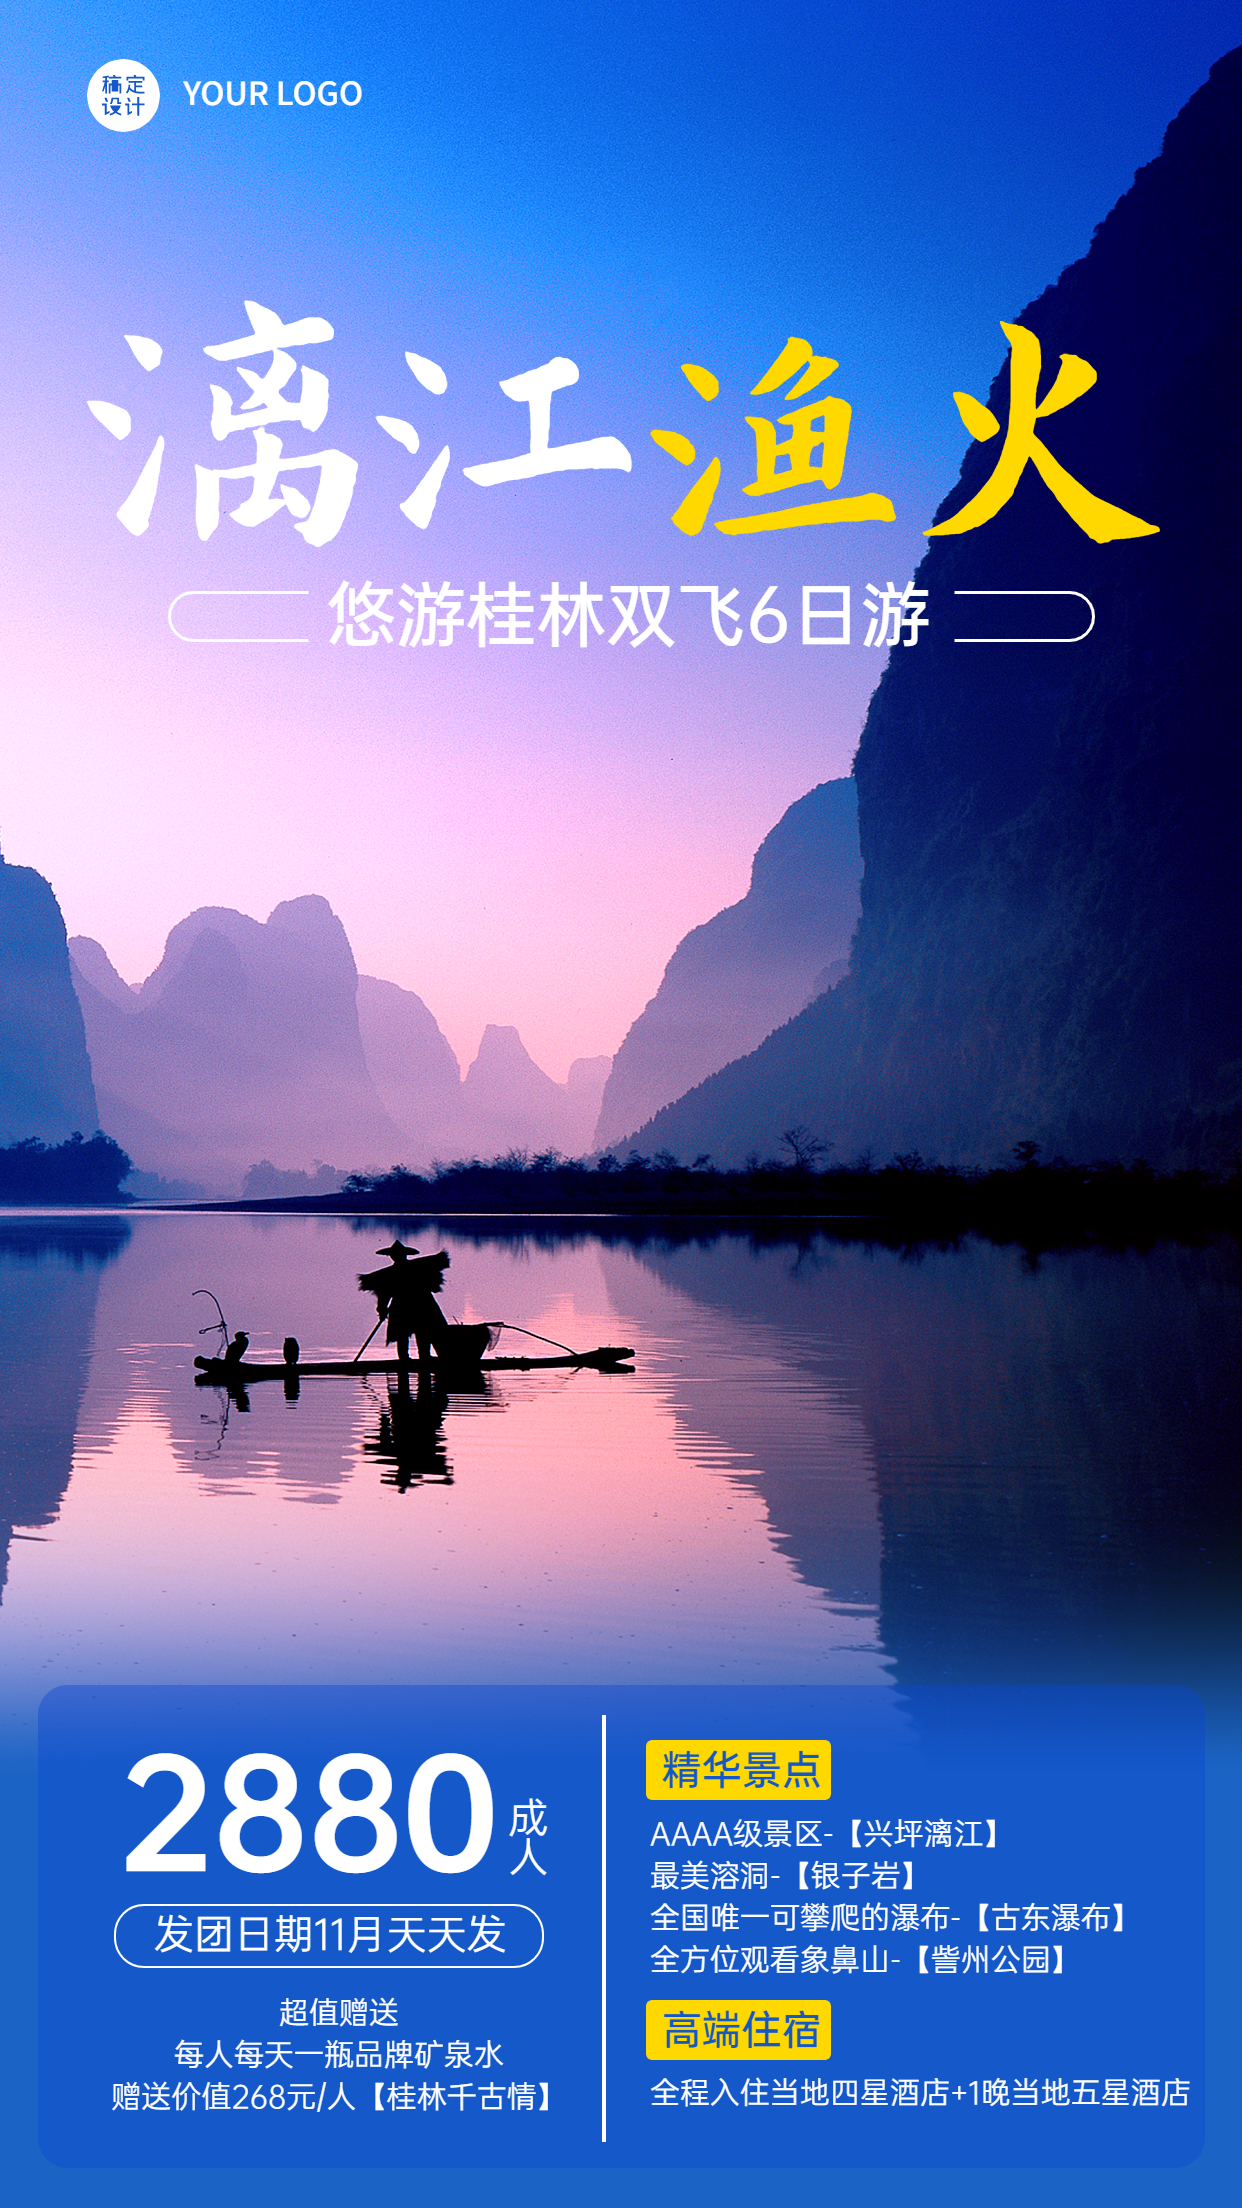 桂林山水山野名胜景点旅游手机海报预览效果